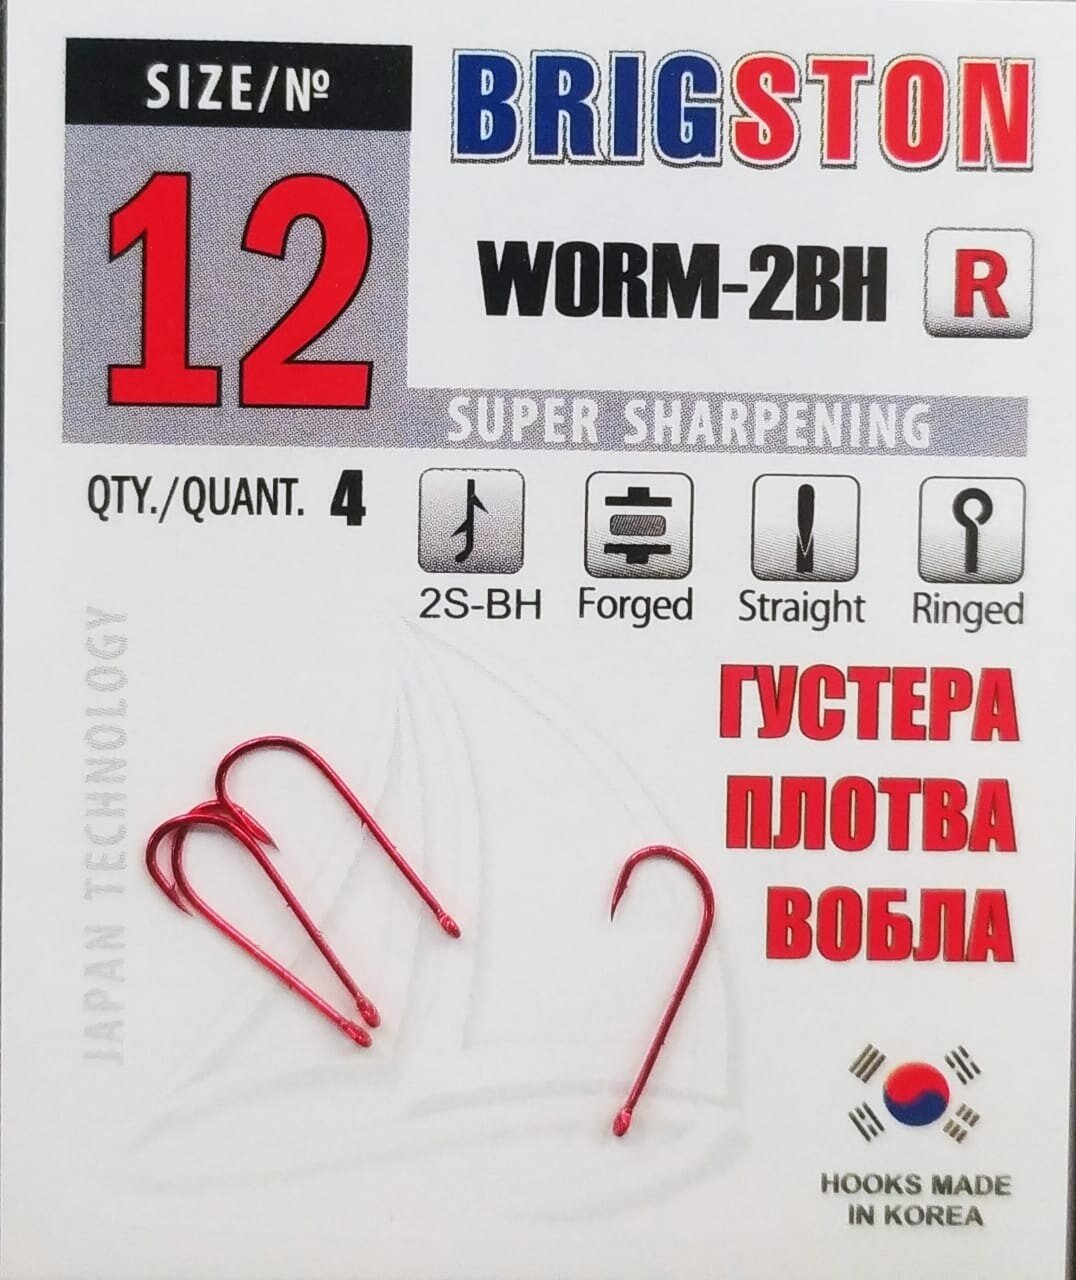 Рыболовные крючки Brigston Worm-2BH (R) №12 упаковка 4 штуки